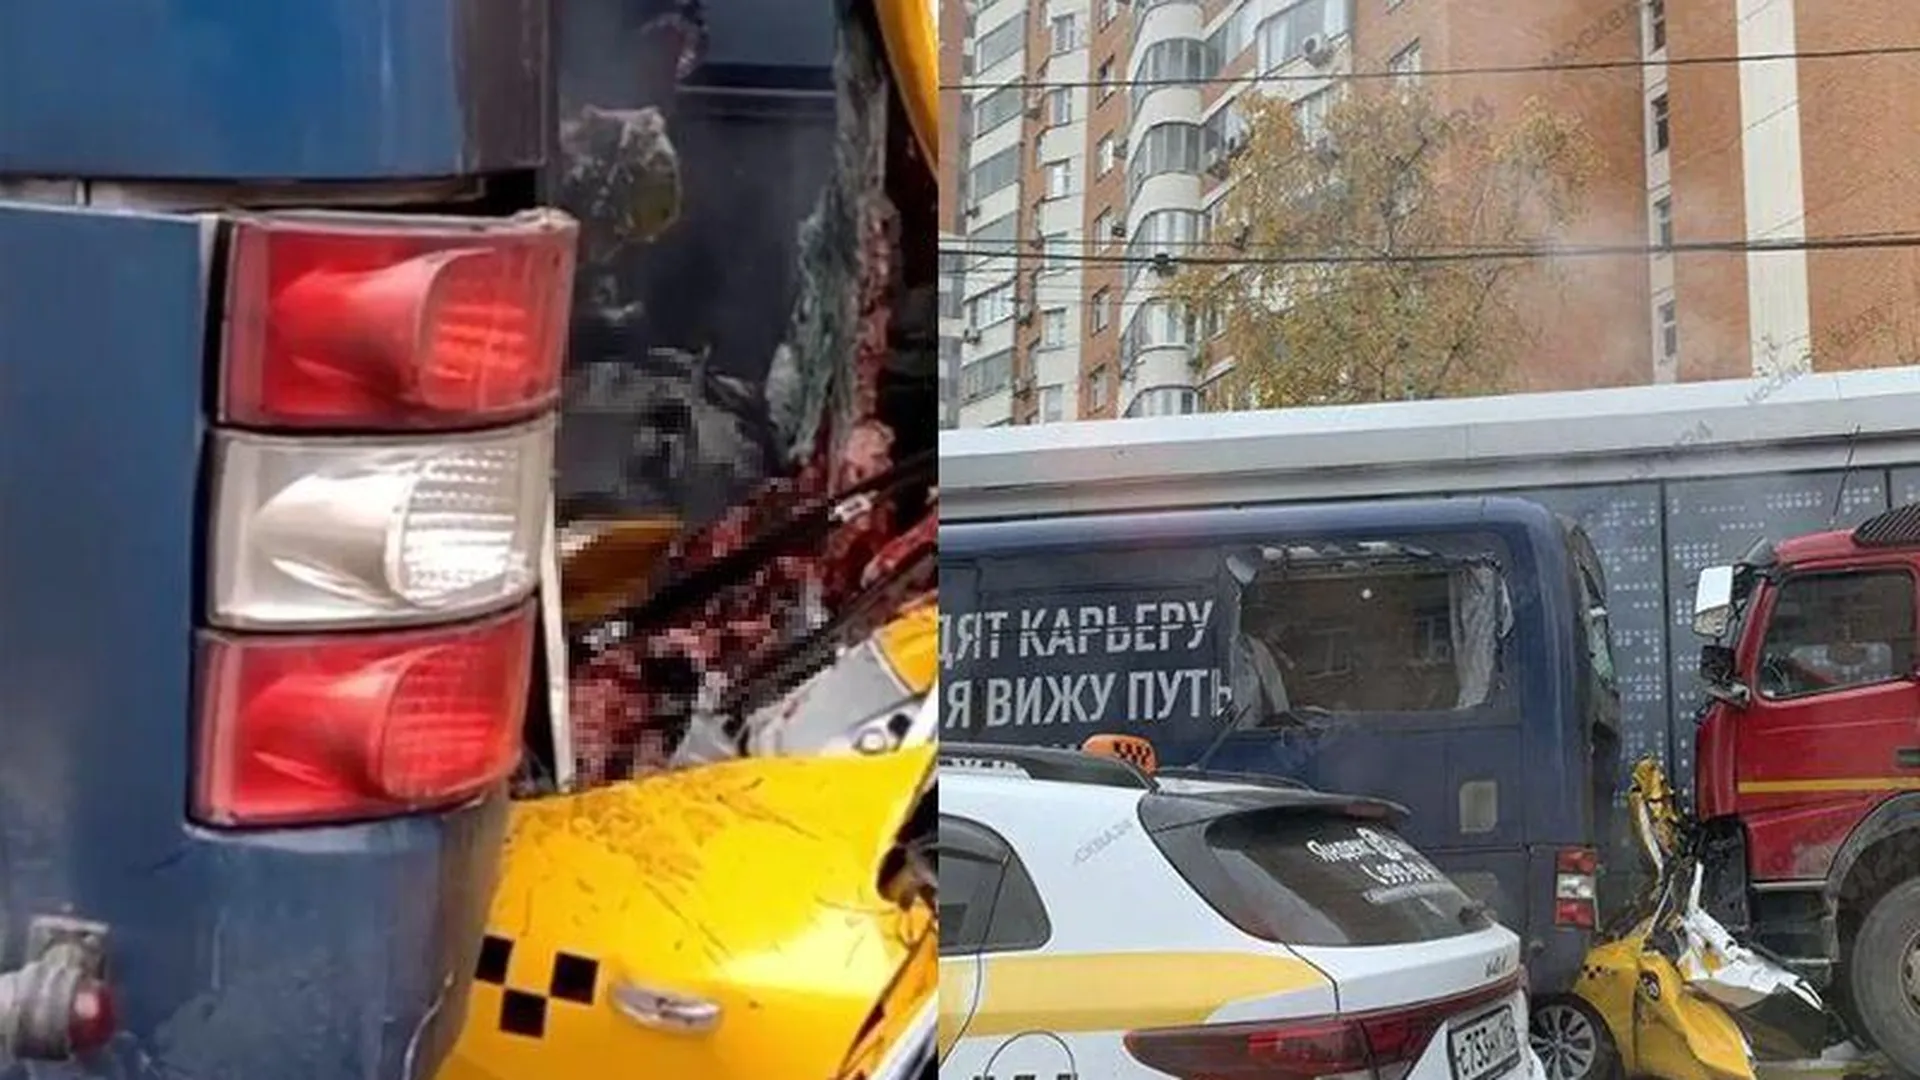  Водитель самосвала скрылся с места смертельного ДТП в центре Москвы 